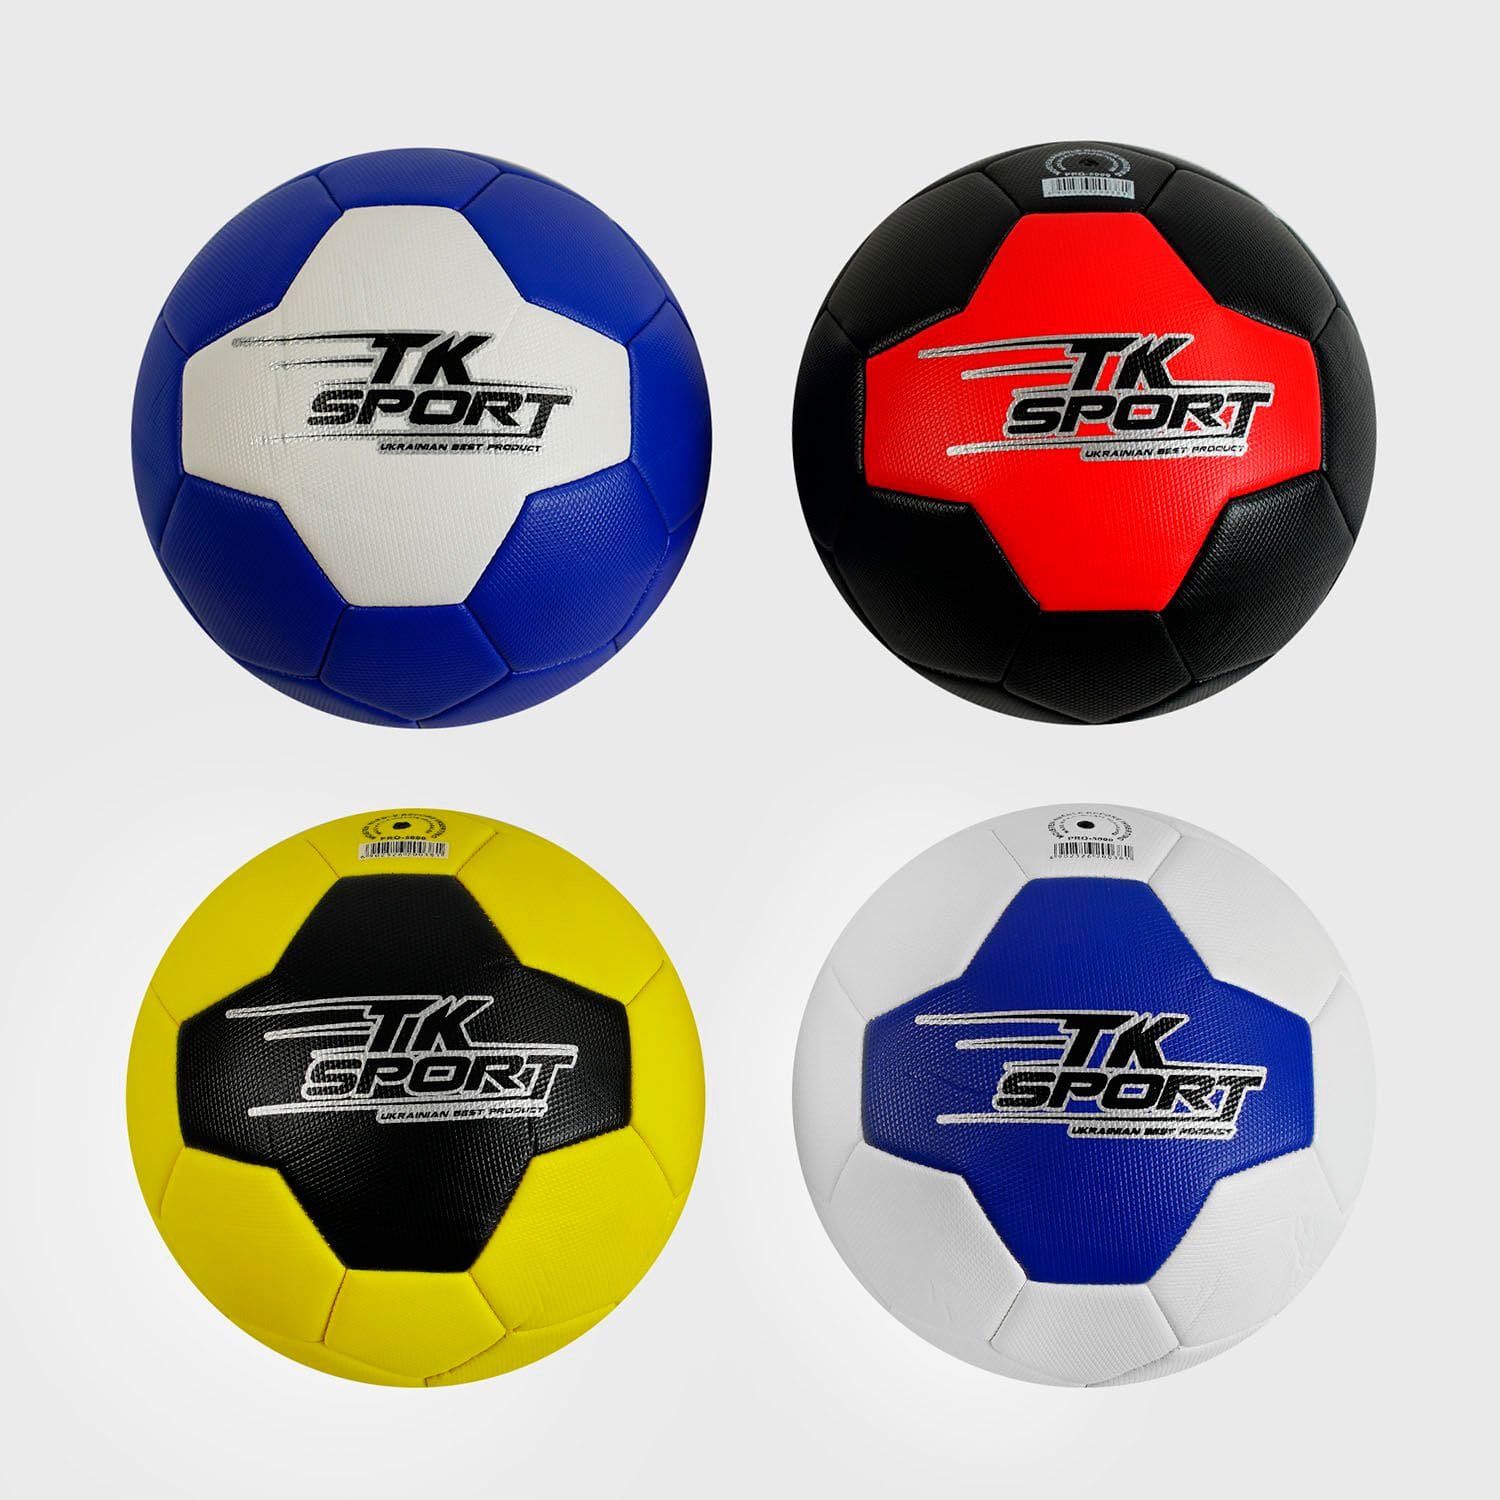 М'яч футбольний розмір №5 "TK Sport" (C 55032) вага 380 грам, матеріал ТРЕ